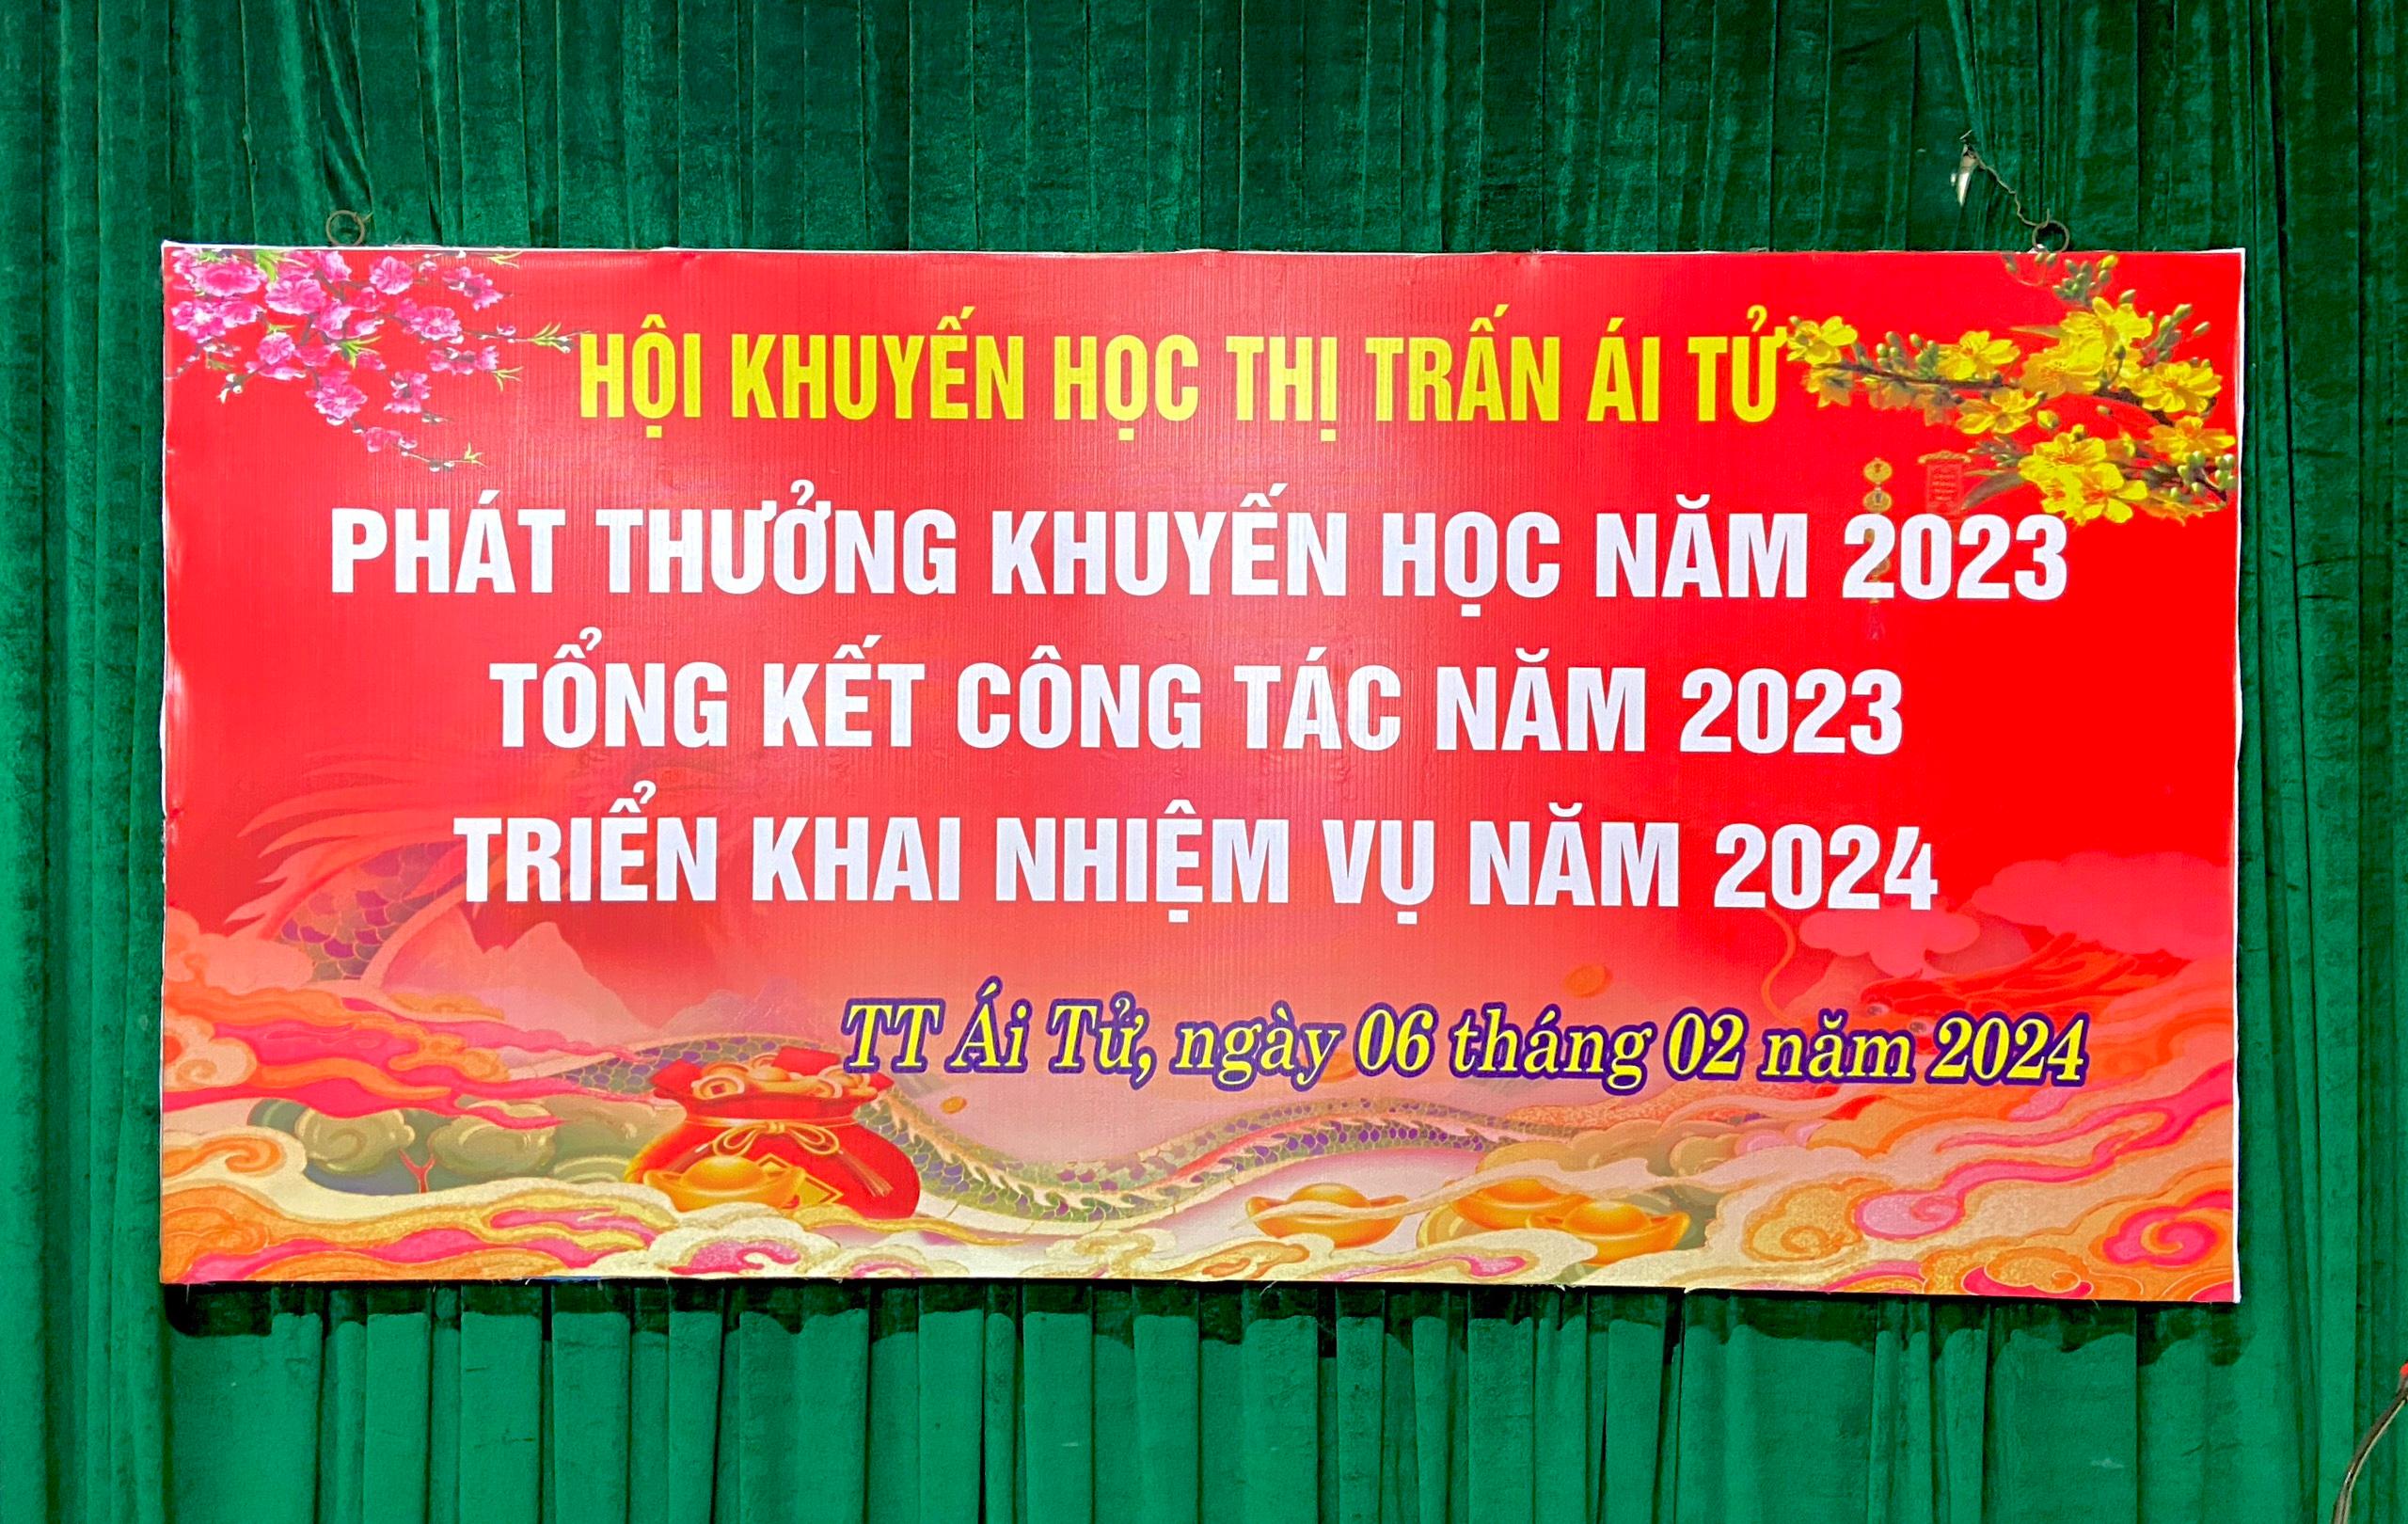 PHÁT THƯỞNG KHUYẾN HỌC NĂM 2023 TỔNG KẾT CÔNG TÁC NĂM 2023 VÀ TRIỂN KHAI NHIỆM VỤ NĂM 2024